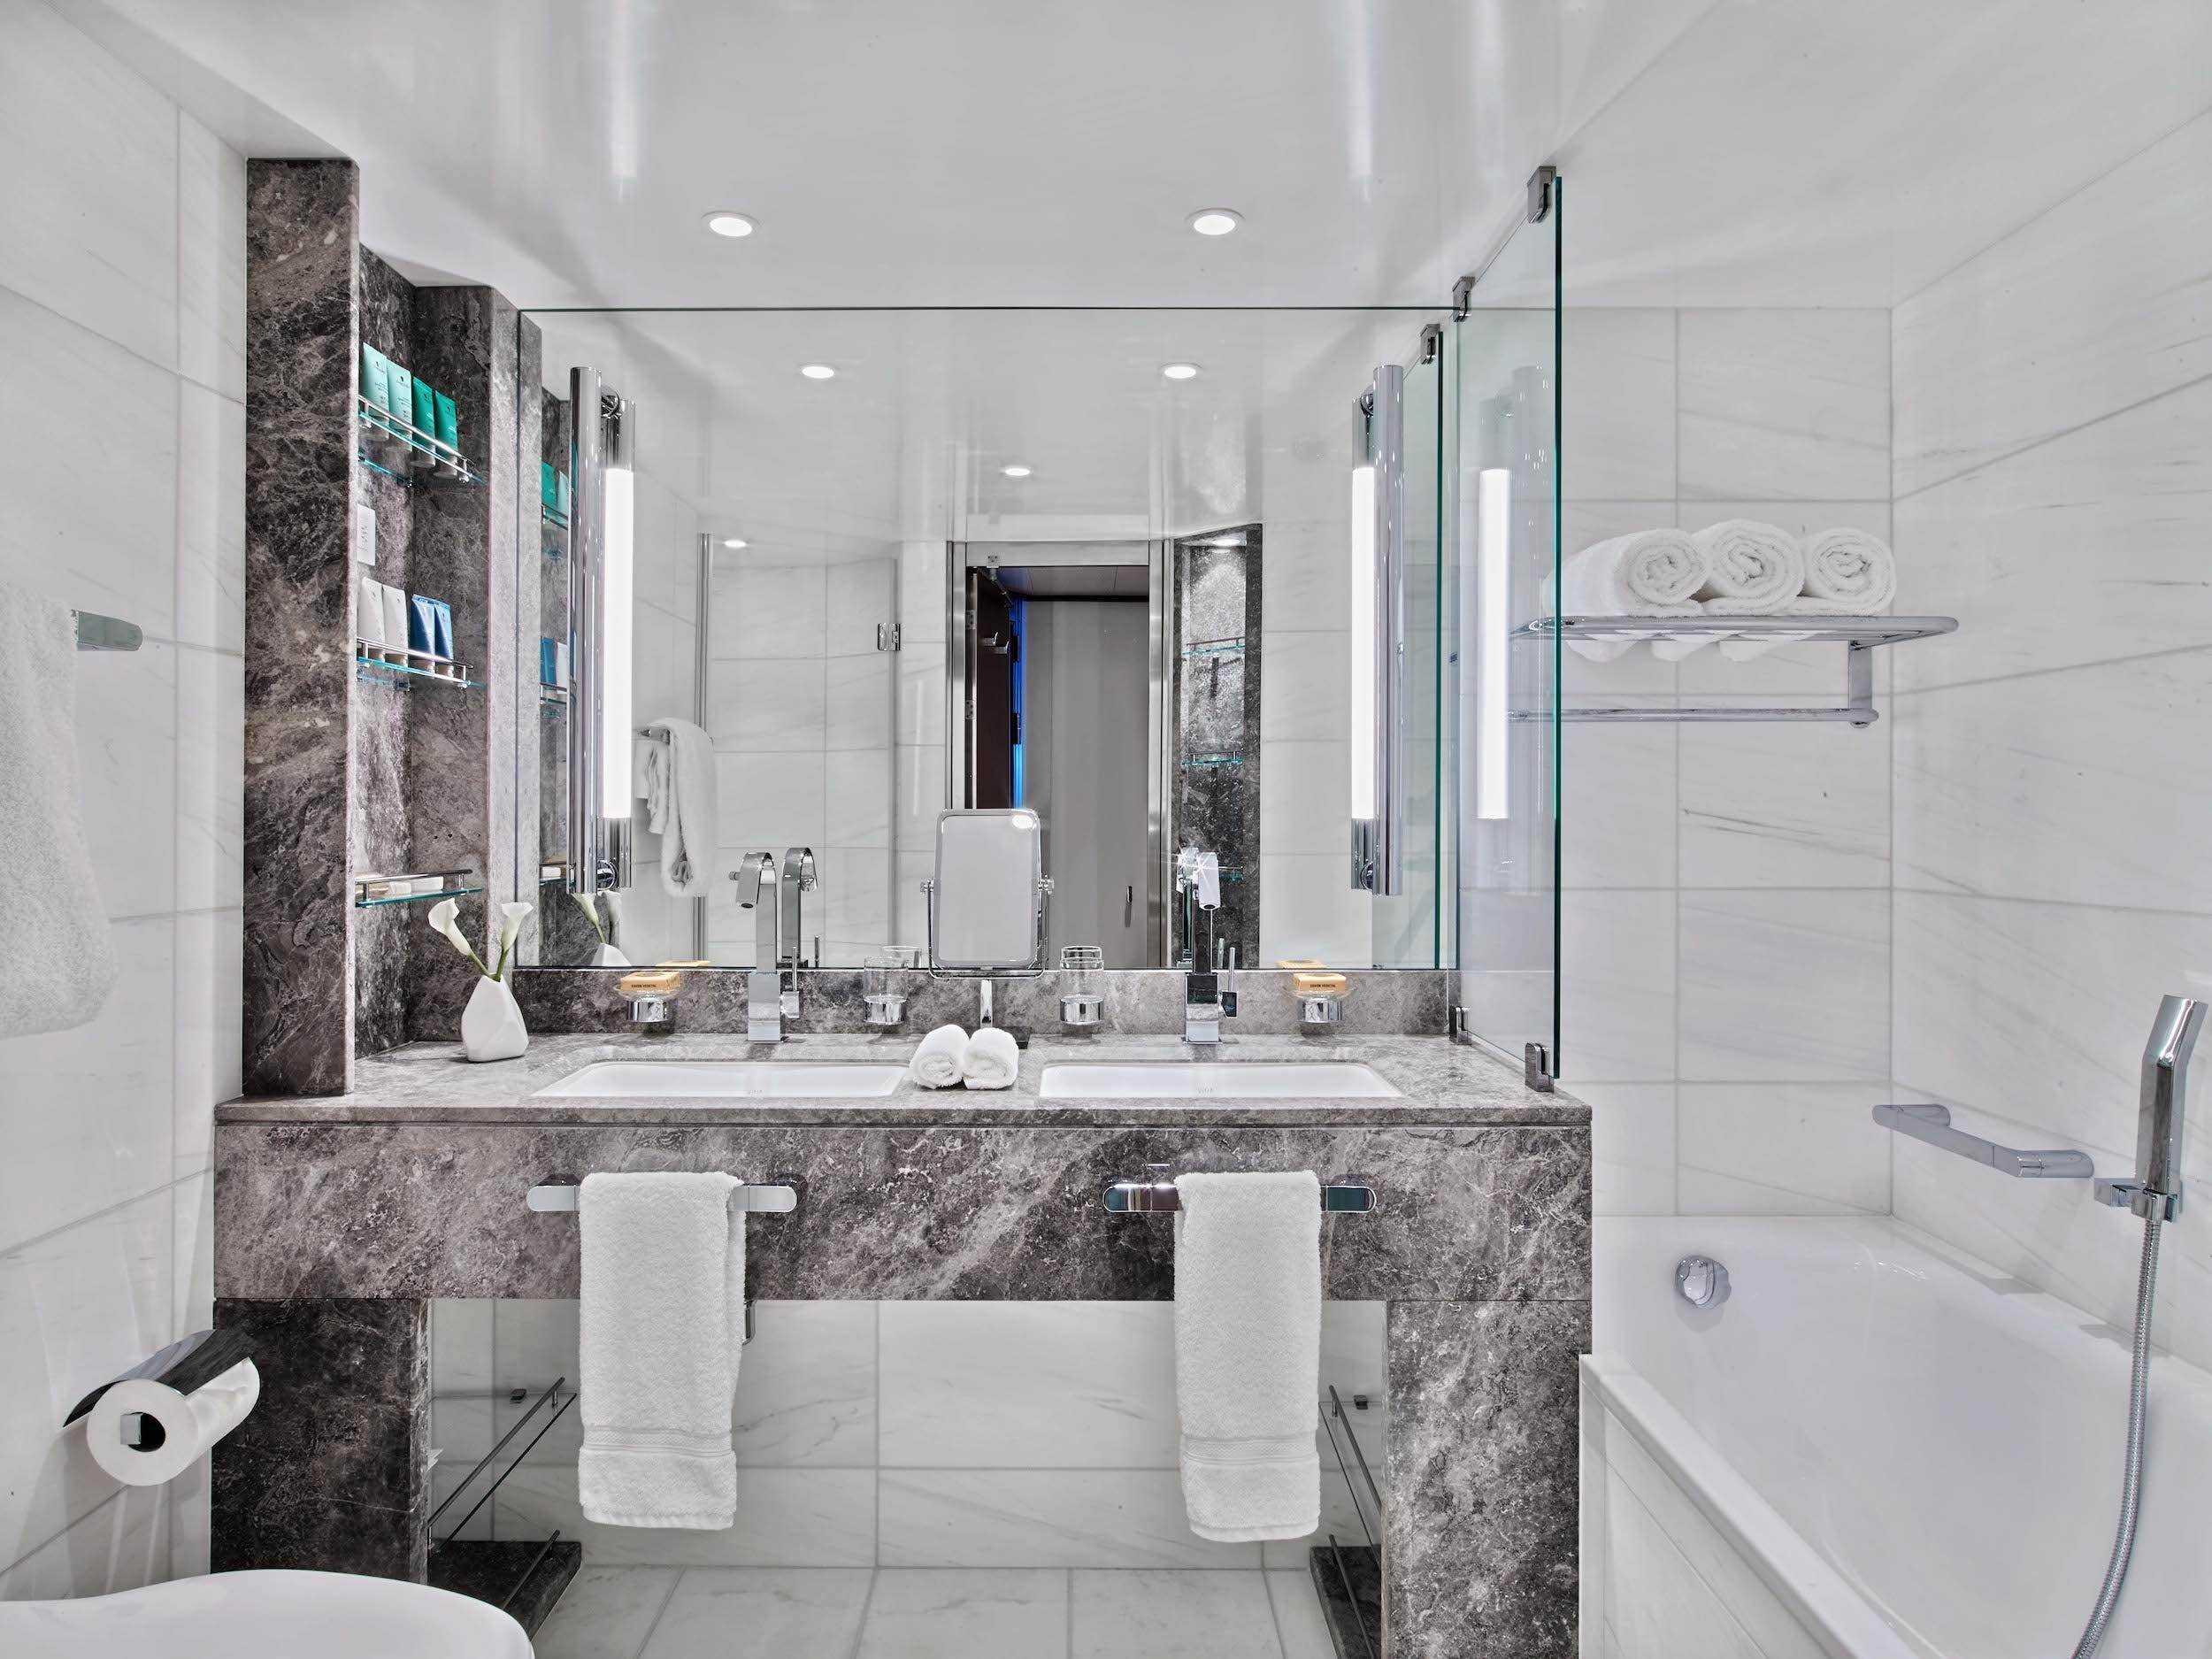 ein modernes Badezimmer in Weiß und Marmor mit Waschbecken und Badewanne